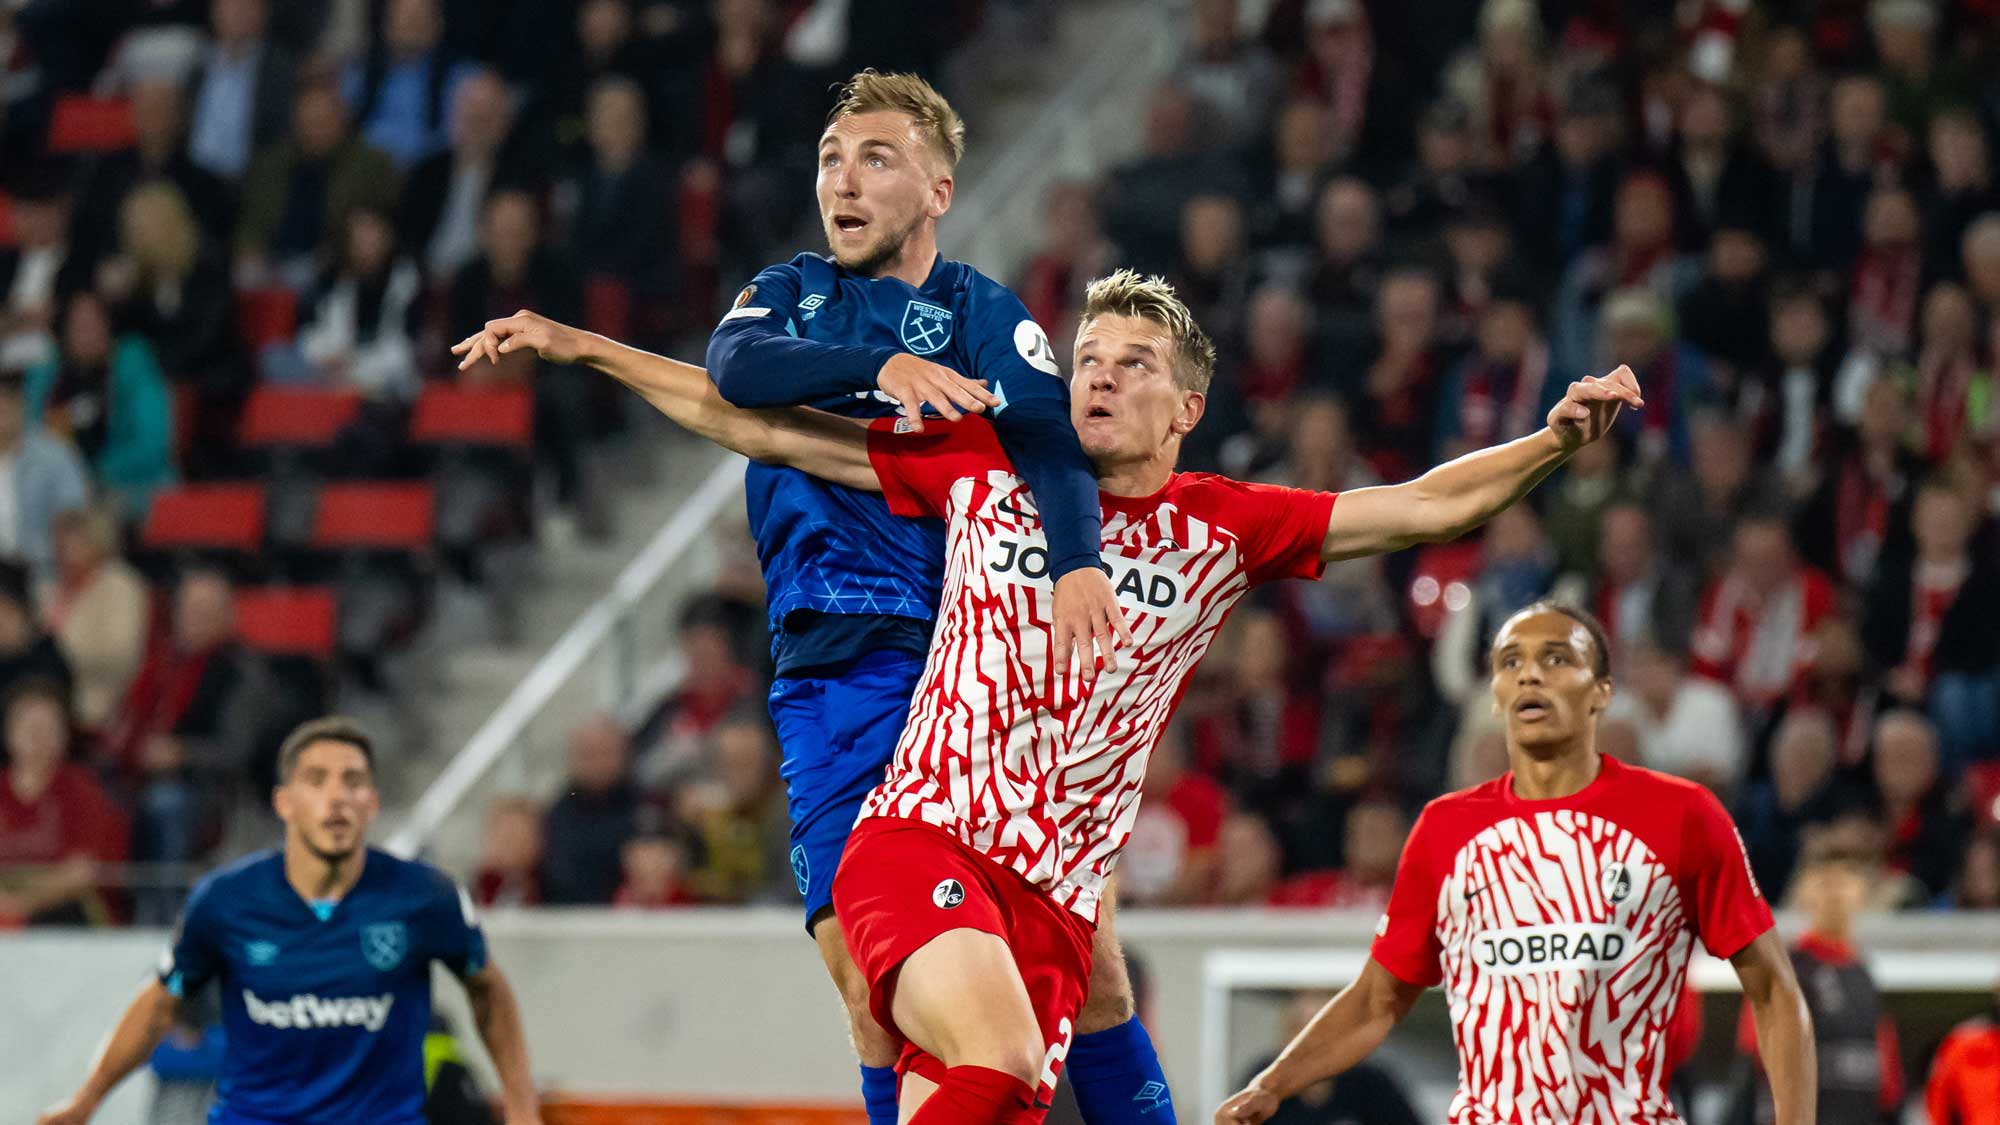 Bowen in action against Freiburg